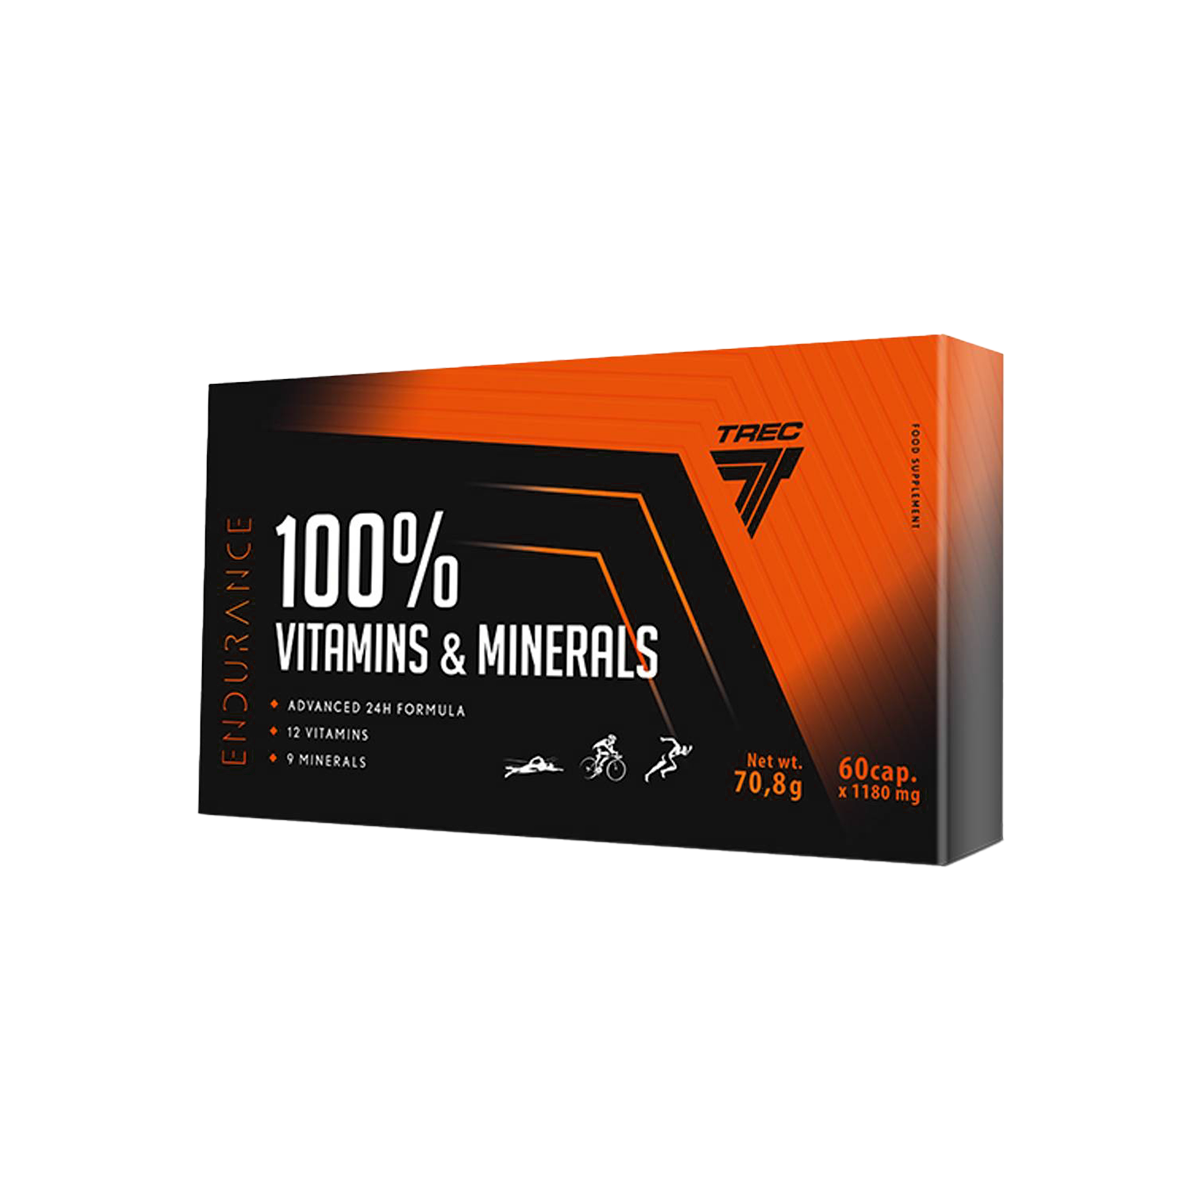 100% Vitamins & Minerals Endurance, 60 cap - GoActiveShop